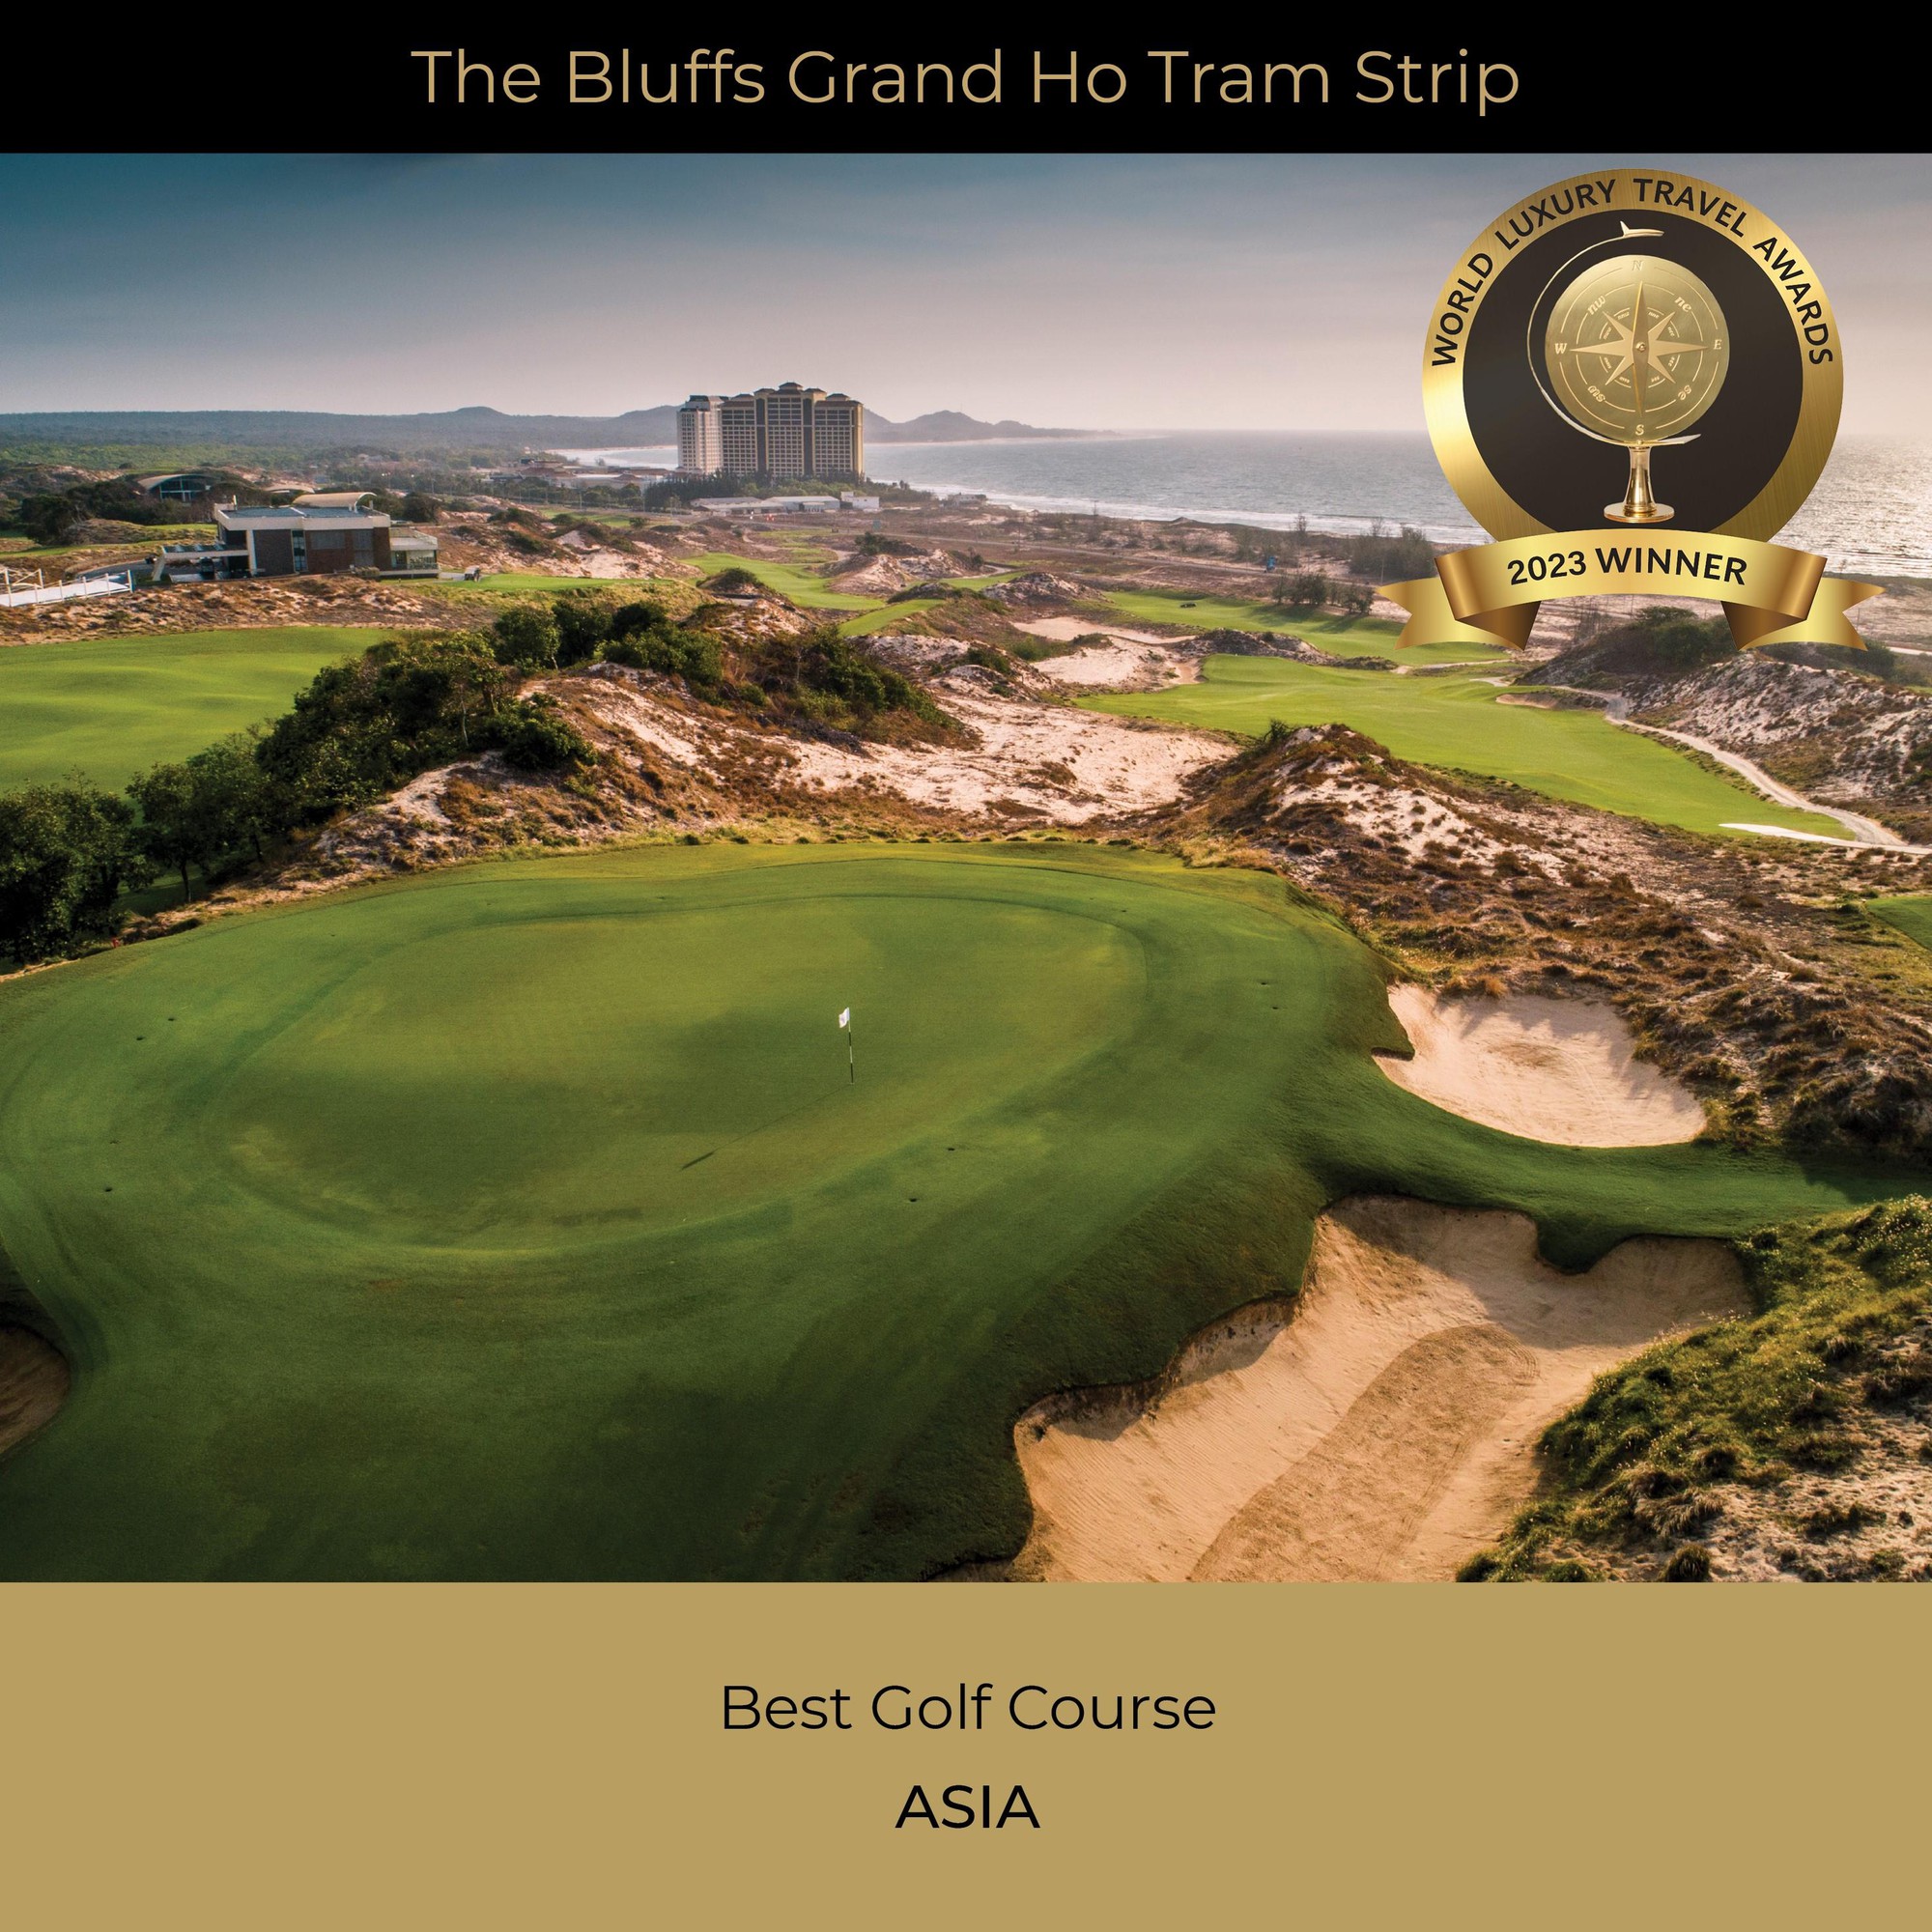 The Bluffs Grand Ho Tram đạt giải Sân golf tốt nhất châu Á 2023 - Ảnh 2.